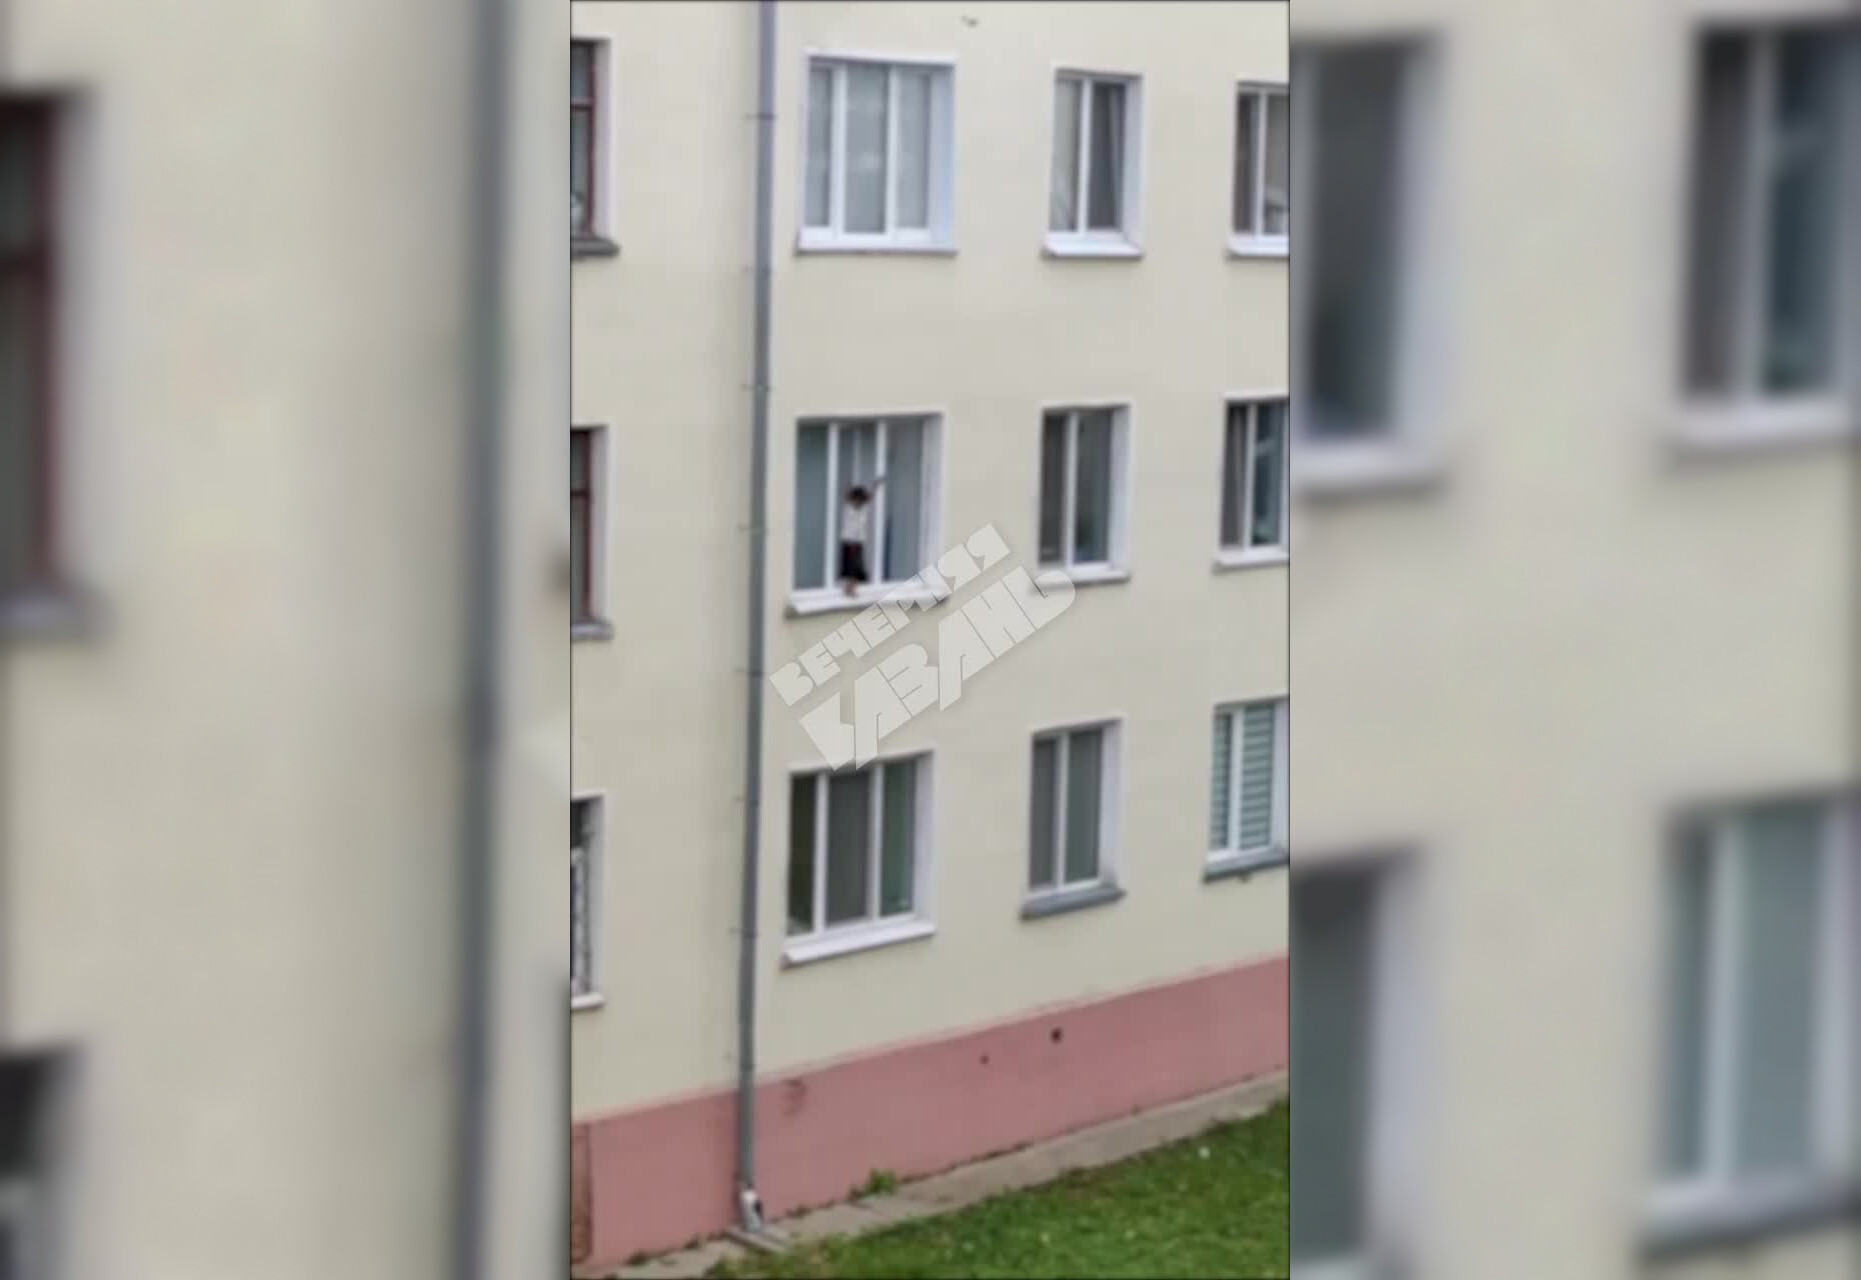 «Господи, зайди обратно»: в Казани заметили мальчика, который играл на карнизе окна